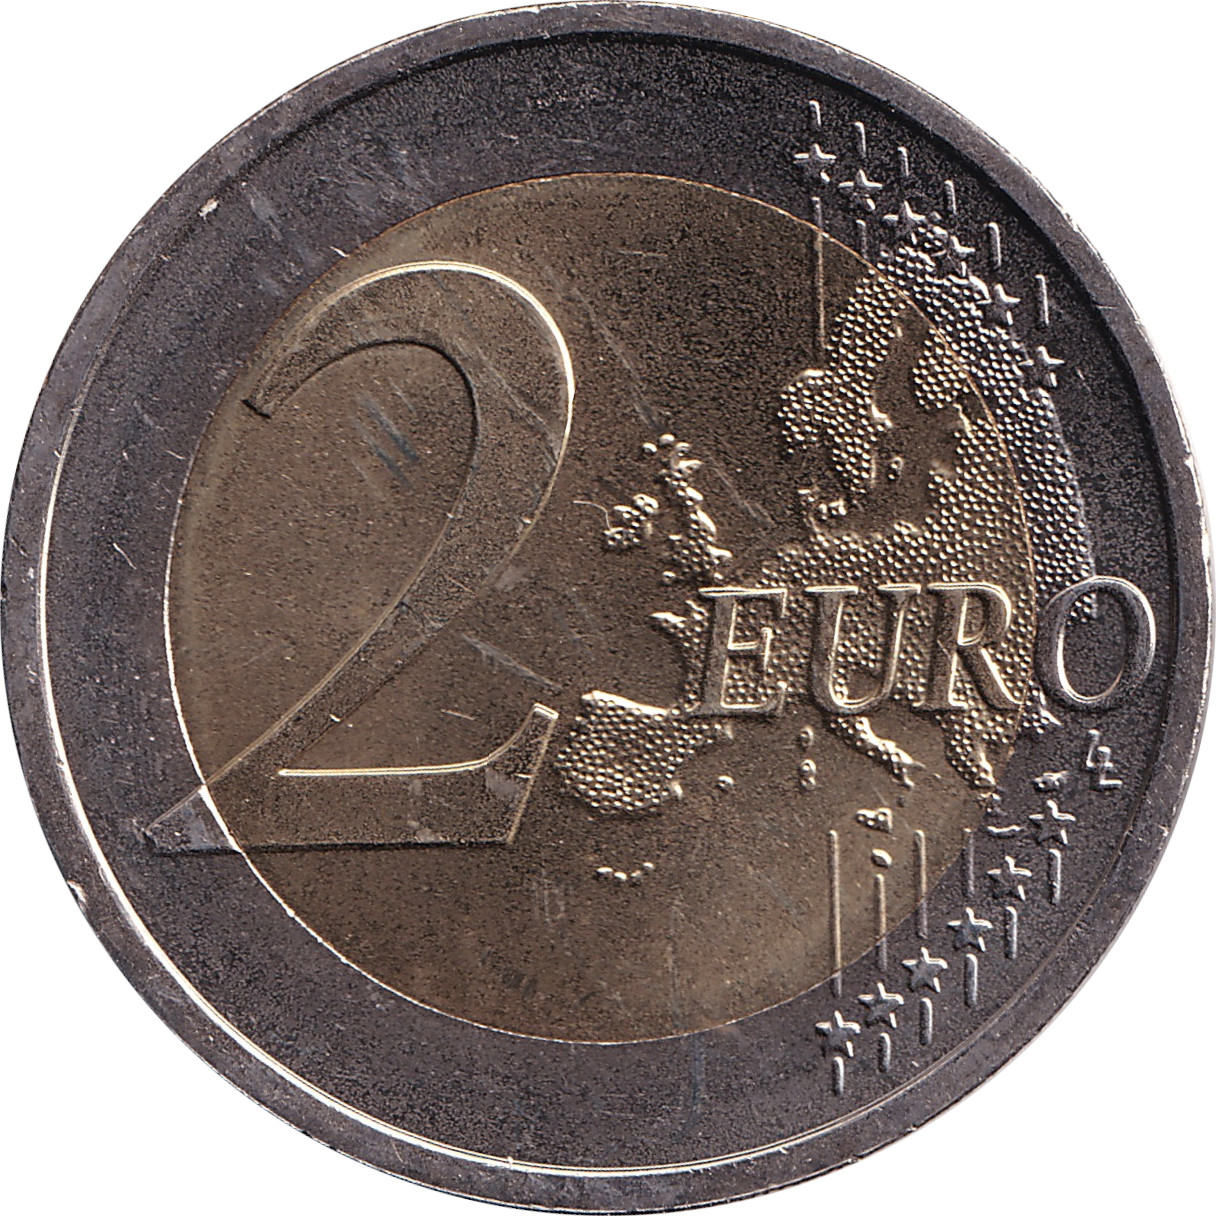 2 euro - République - 25 years